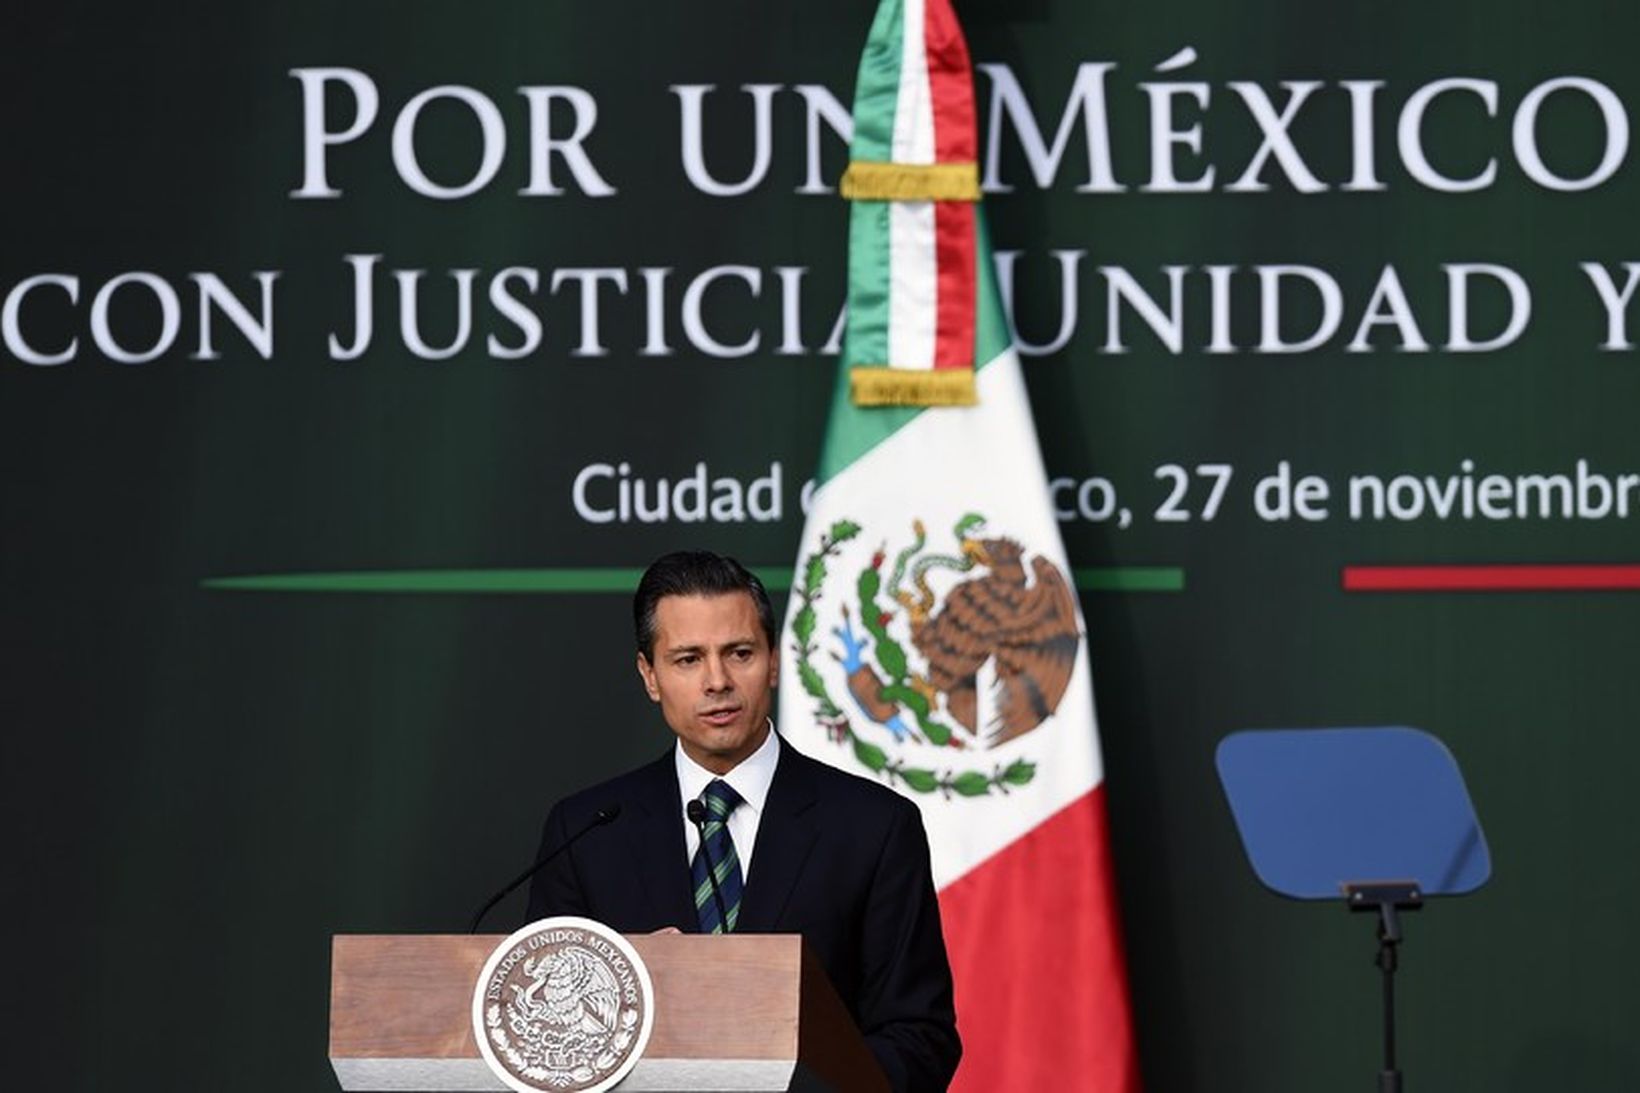 Enrique Peña Nieto, forseti Mexíkó, kynnir tillögur sínar gegn spillingu.